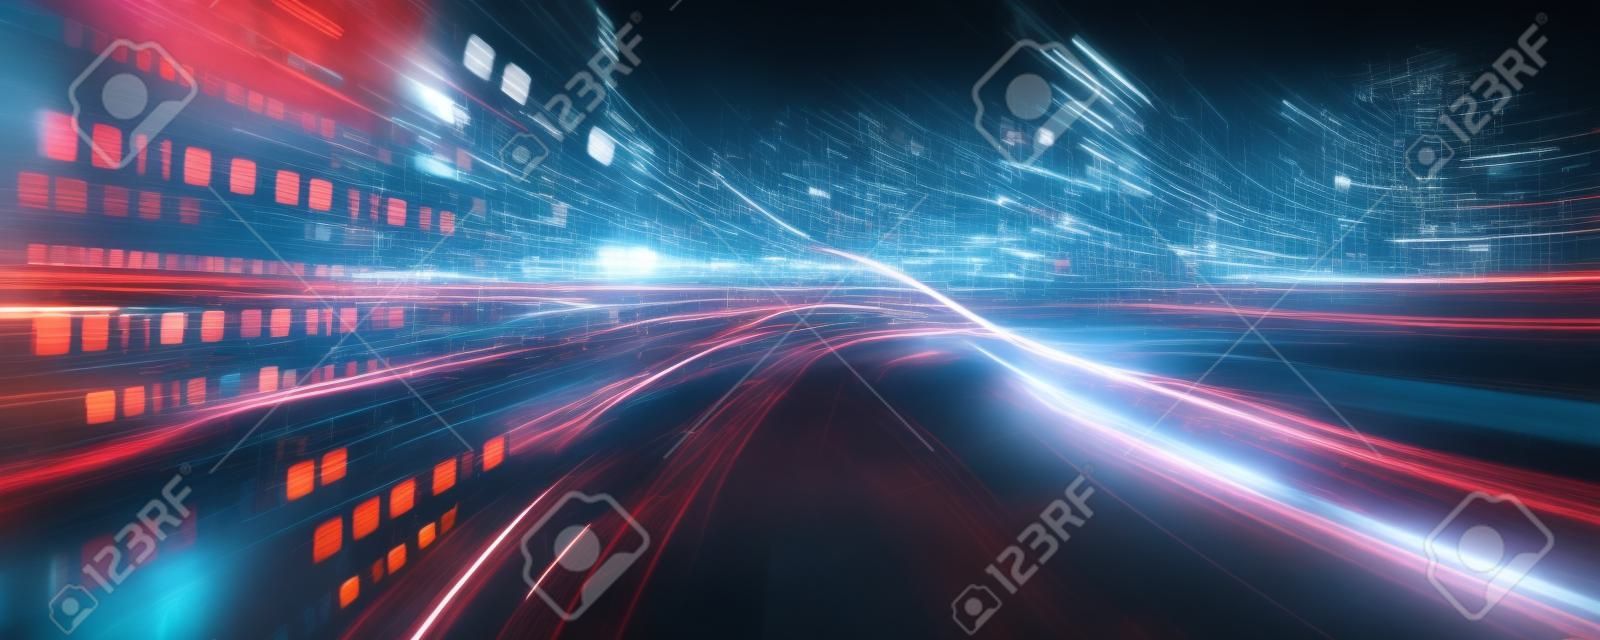 동작 흐림 효과가 있는 도로의 디지털 데이터 흐름은 빠른 속도 전송의 비전을 만듭니다. 미래 디지털 변환, 파괴적 혁신 및 민첩한 비즈니스 방법론의 개념.